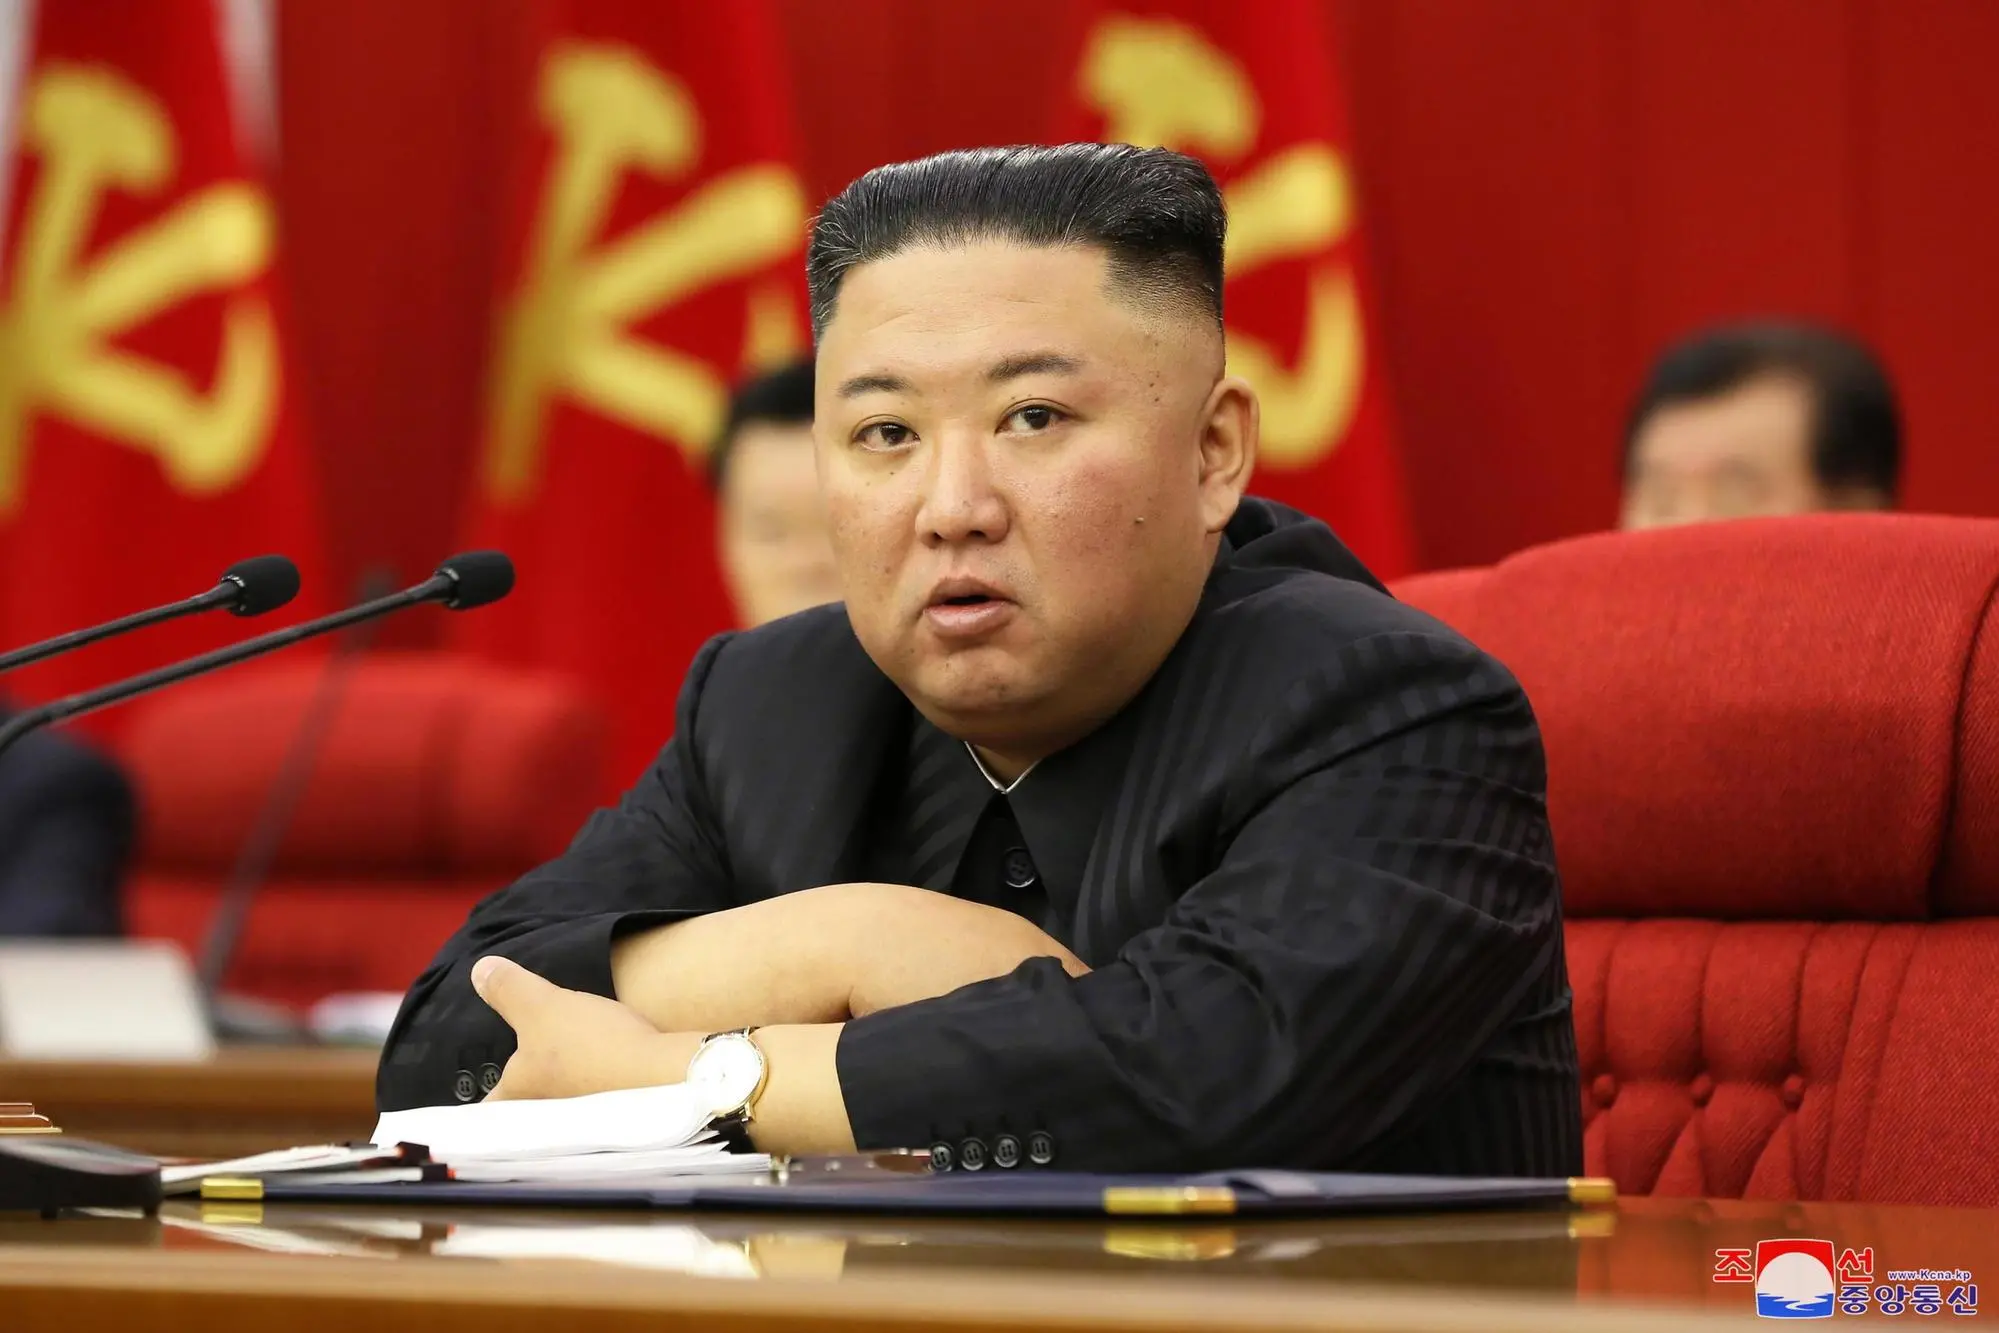 Il dittatore Kim Jong-un, dal 2011 capo supremo della Corea del Nord (Archivio)